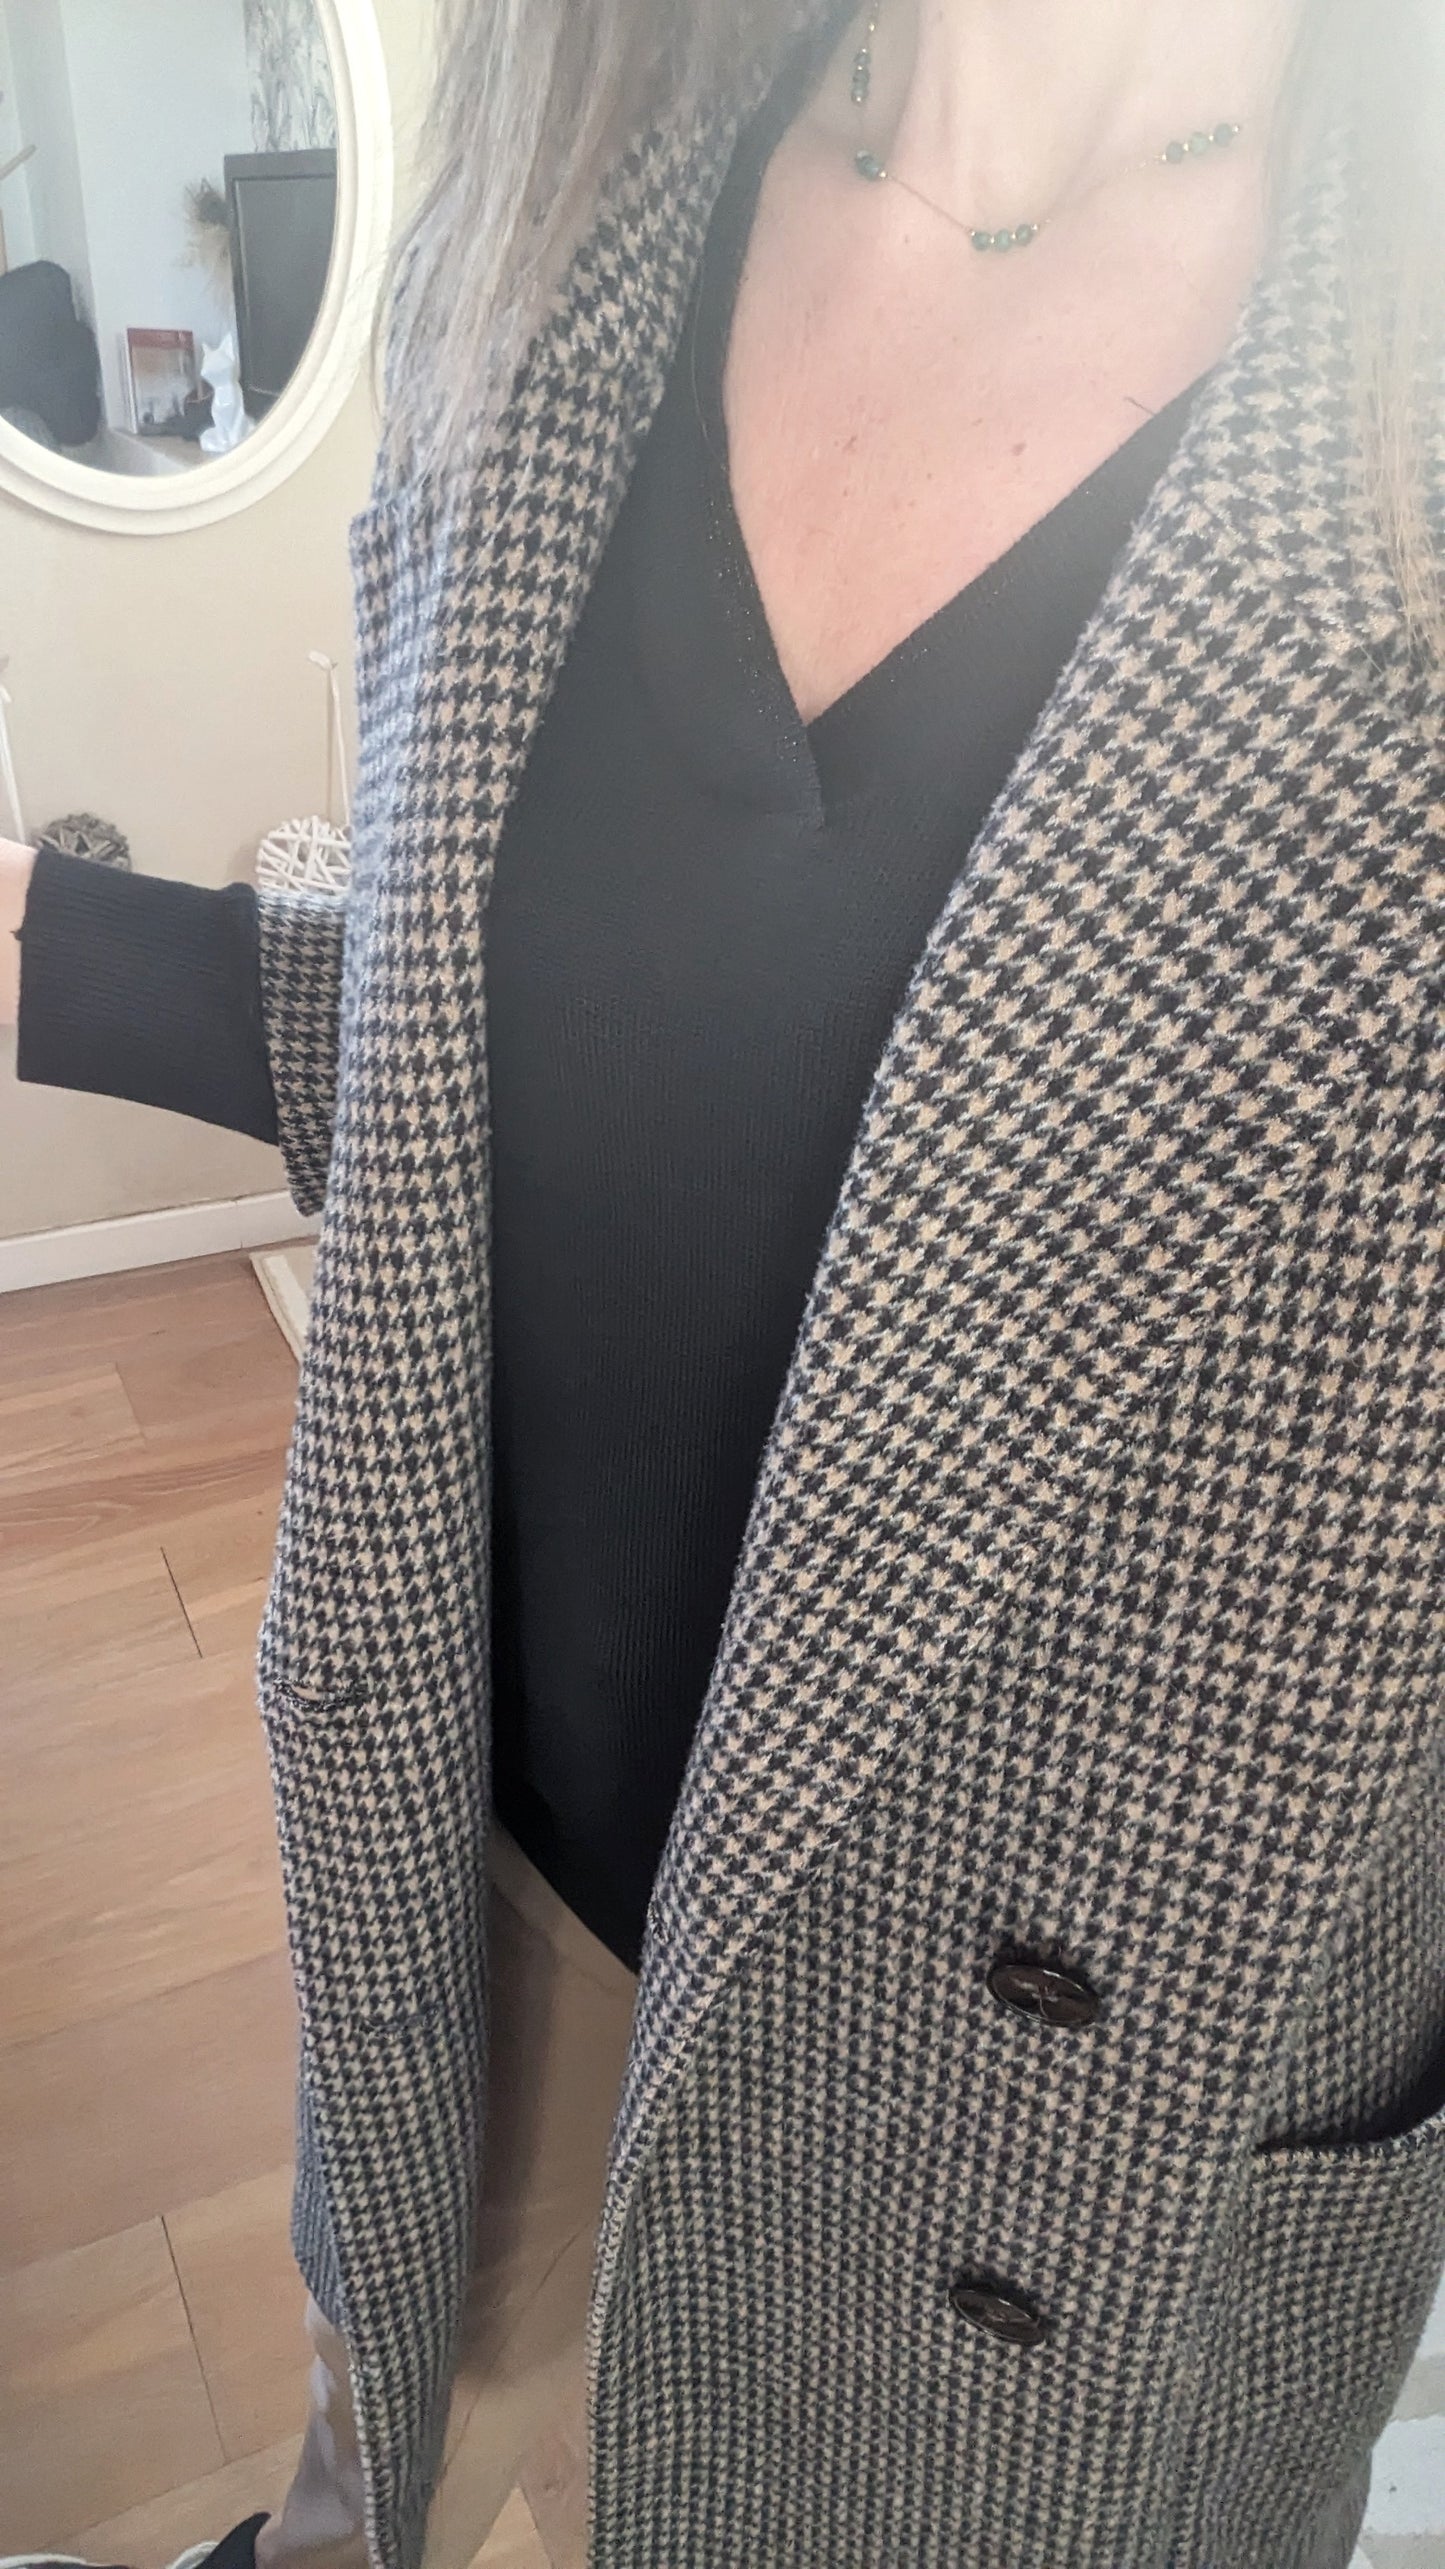 Manteau tendance carreaux - Zara - 36